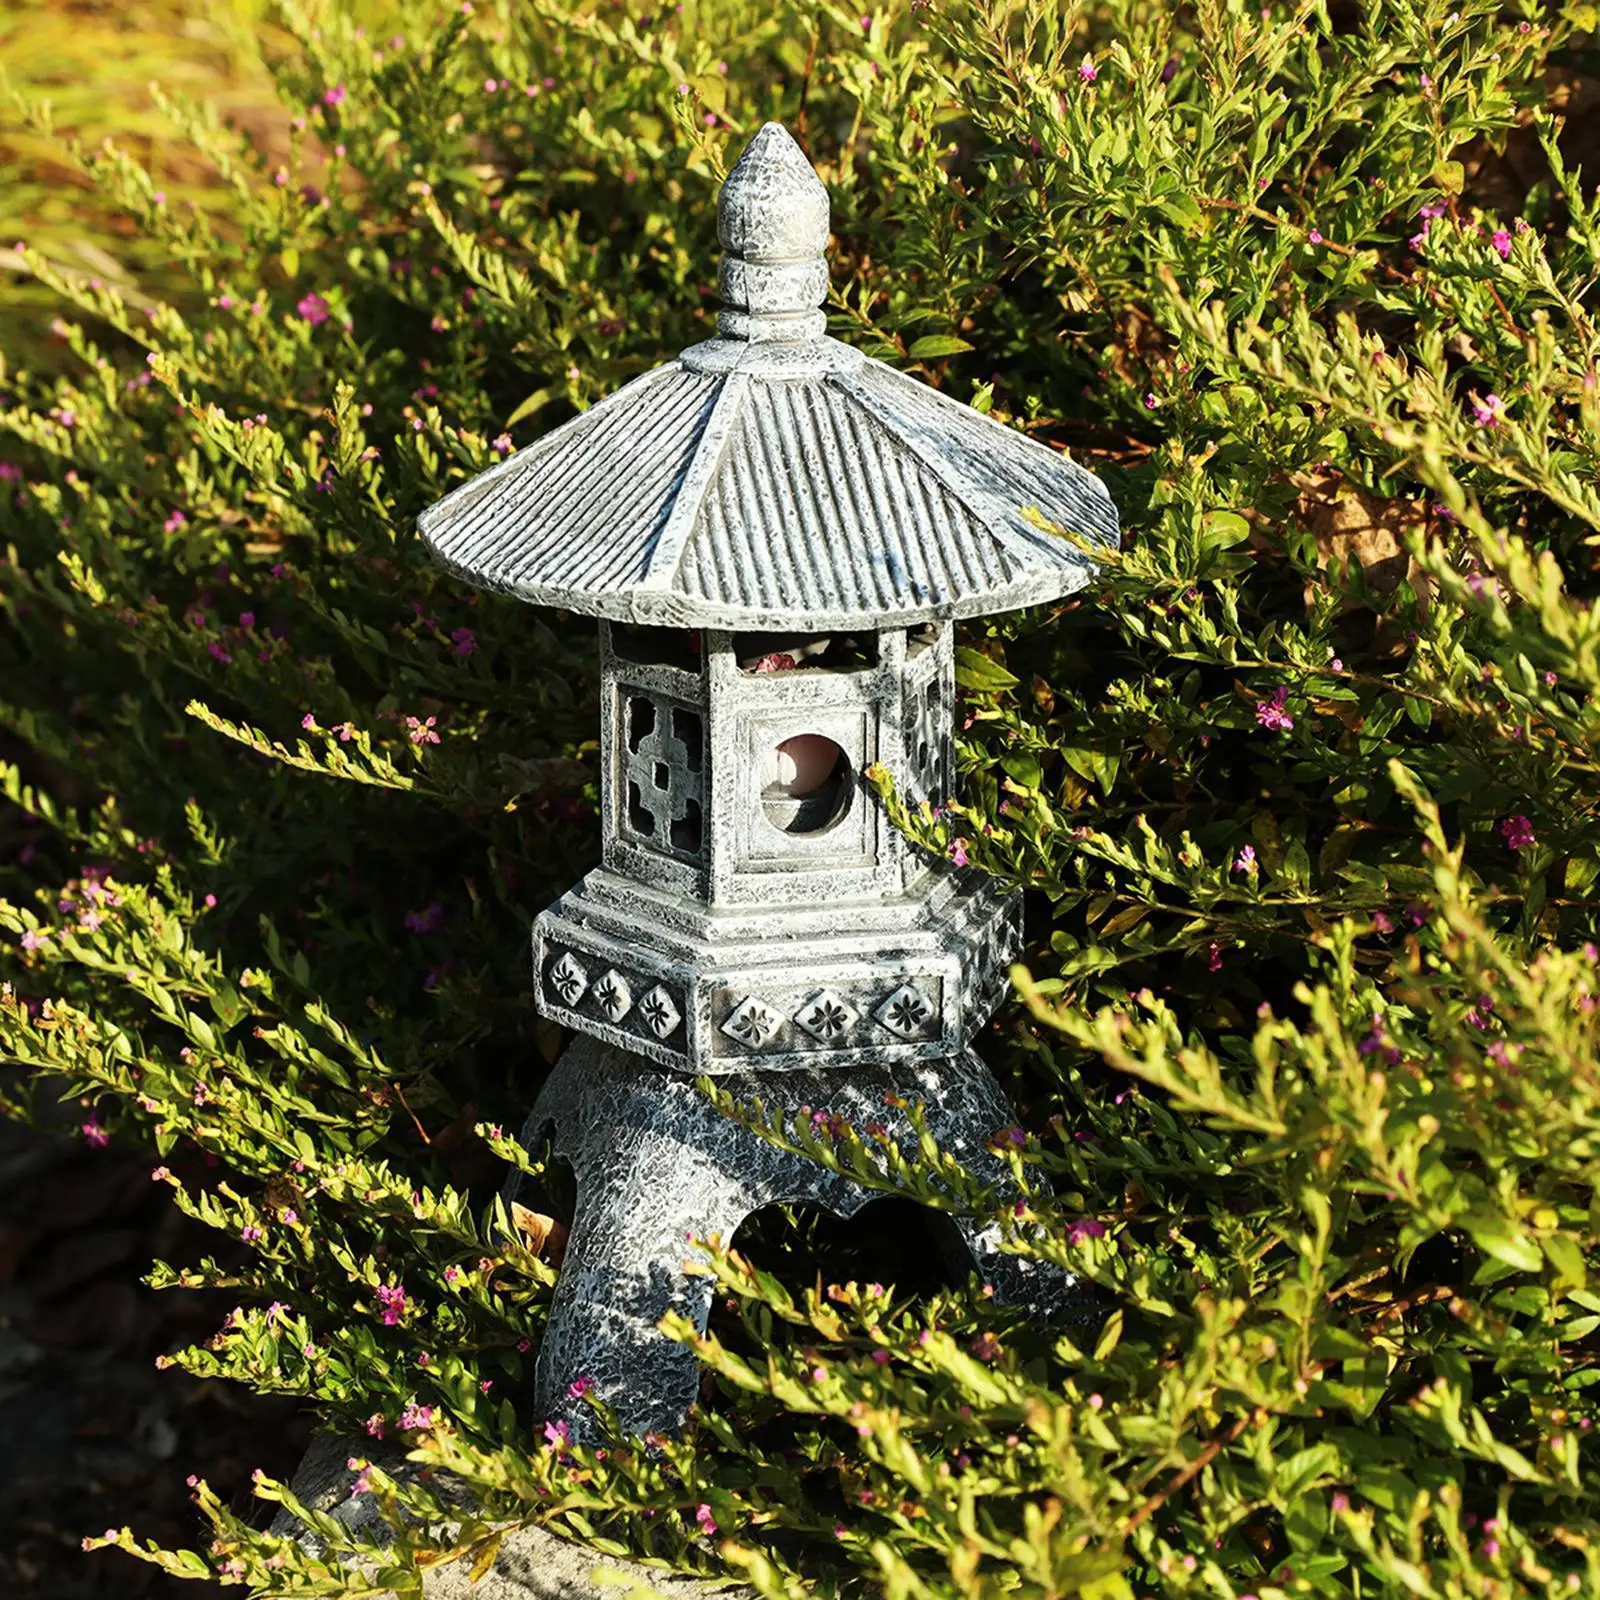 Outdoor Garden Light Statue Resin Lamp Sculpture Durable Energy Saving Solar Pagoda Lantern for Lawn Yard Farmhouse Patio Decor